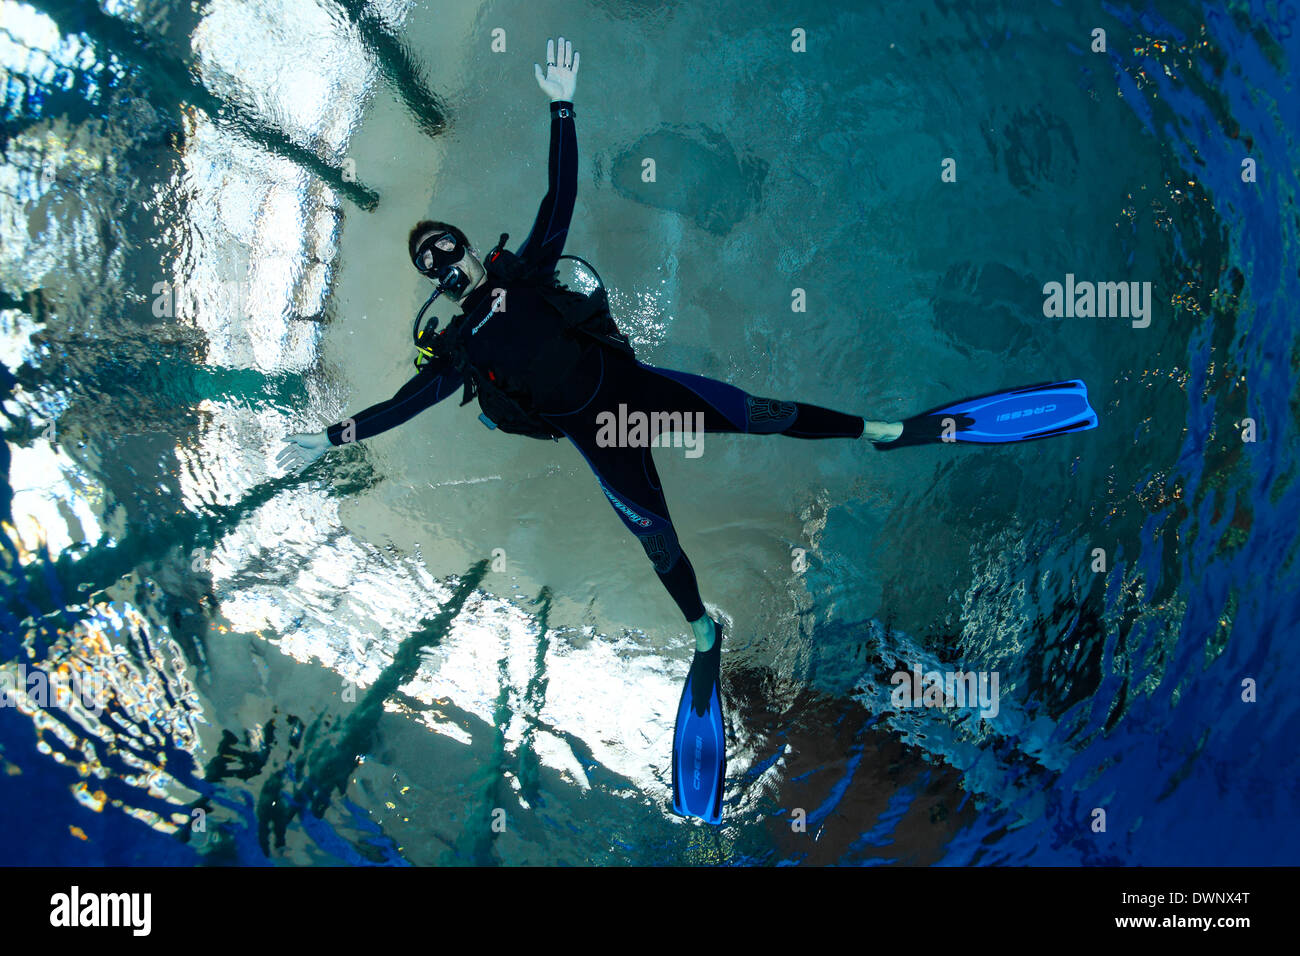 Formation de plongée, plongée sous marine avec les bras tendus et les jambes, en équilibre, dans une piscine, Nuremberg, Bavière, Allemagne Banque D'Images